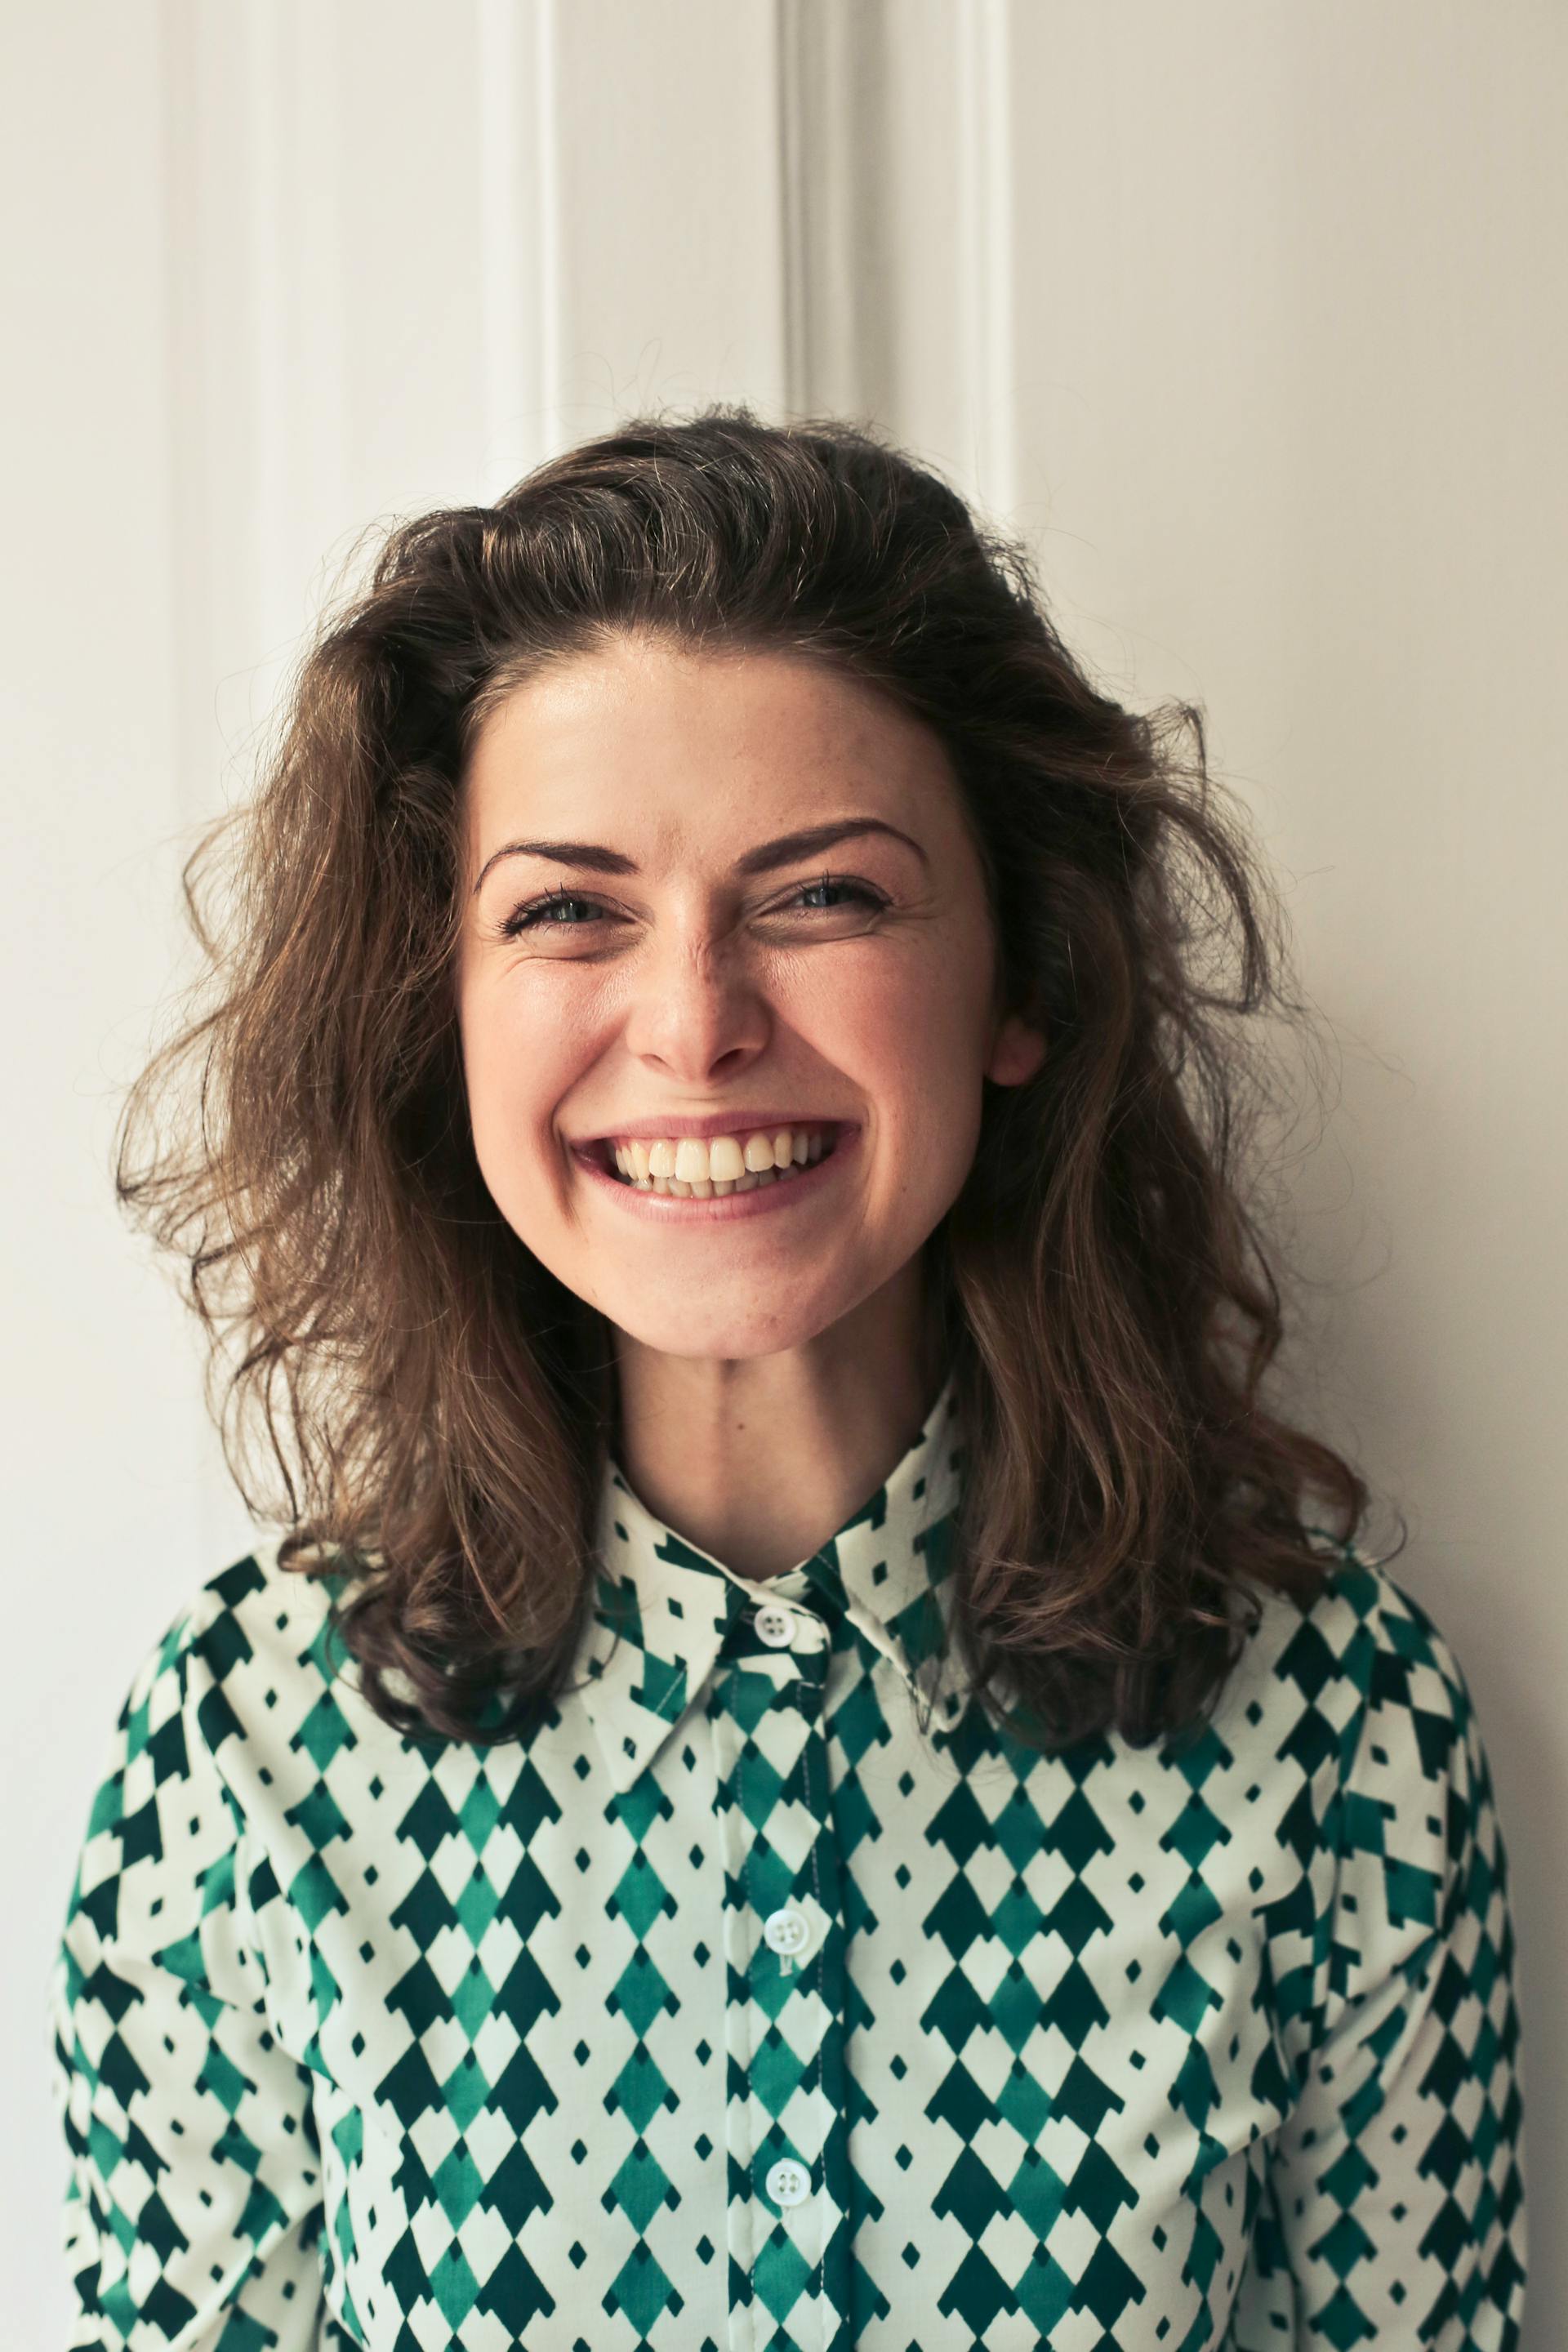 Eine lächelnde Frau | Quelle: Pexels